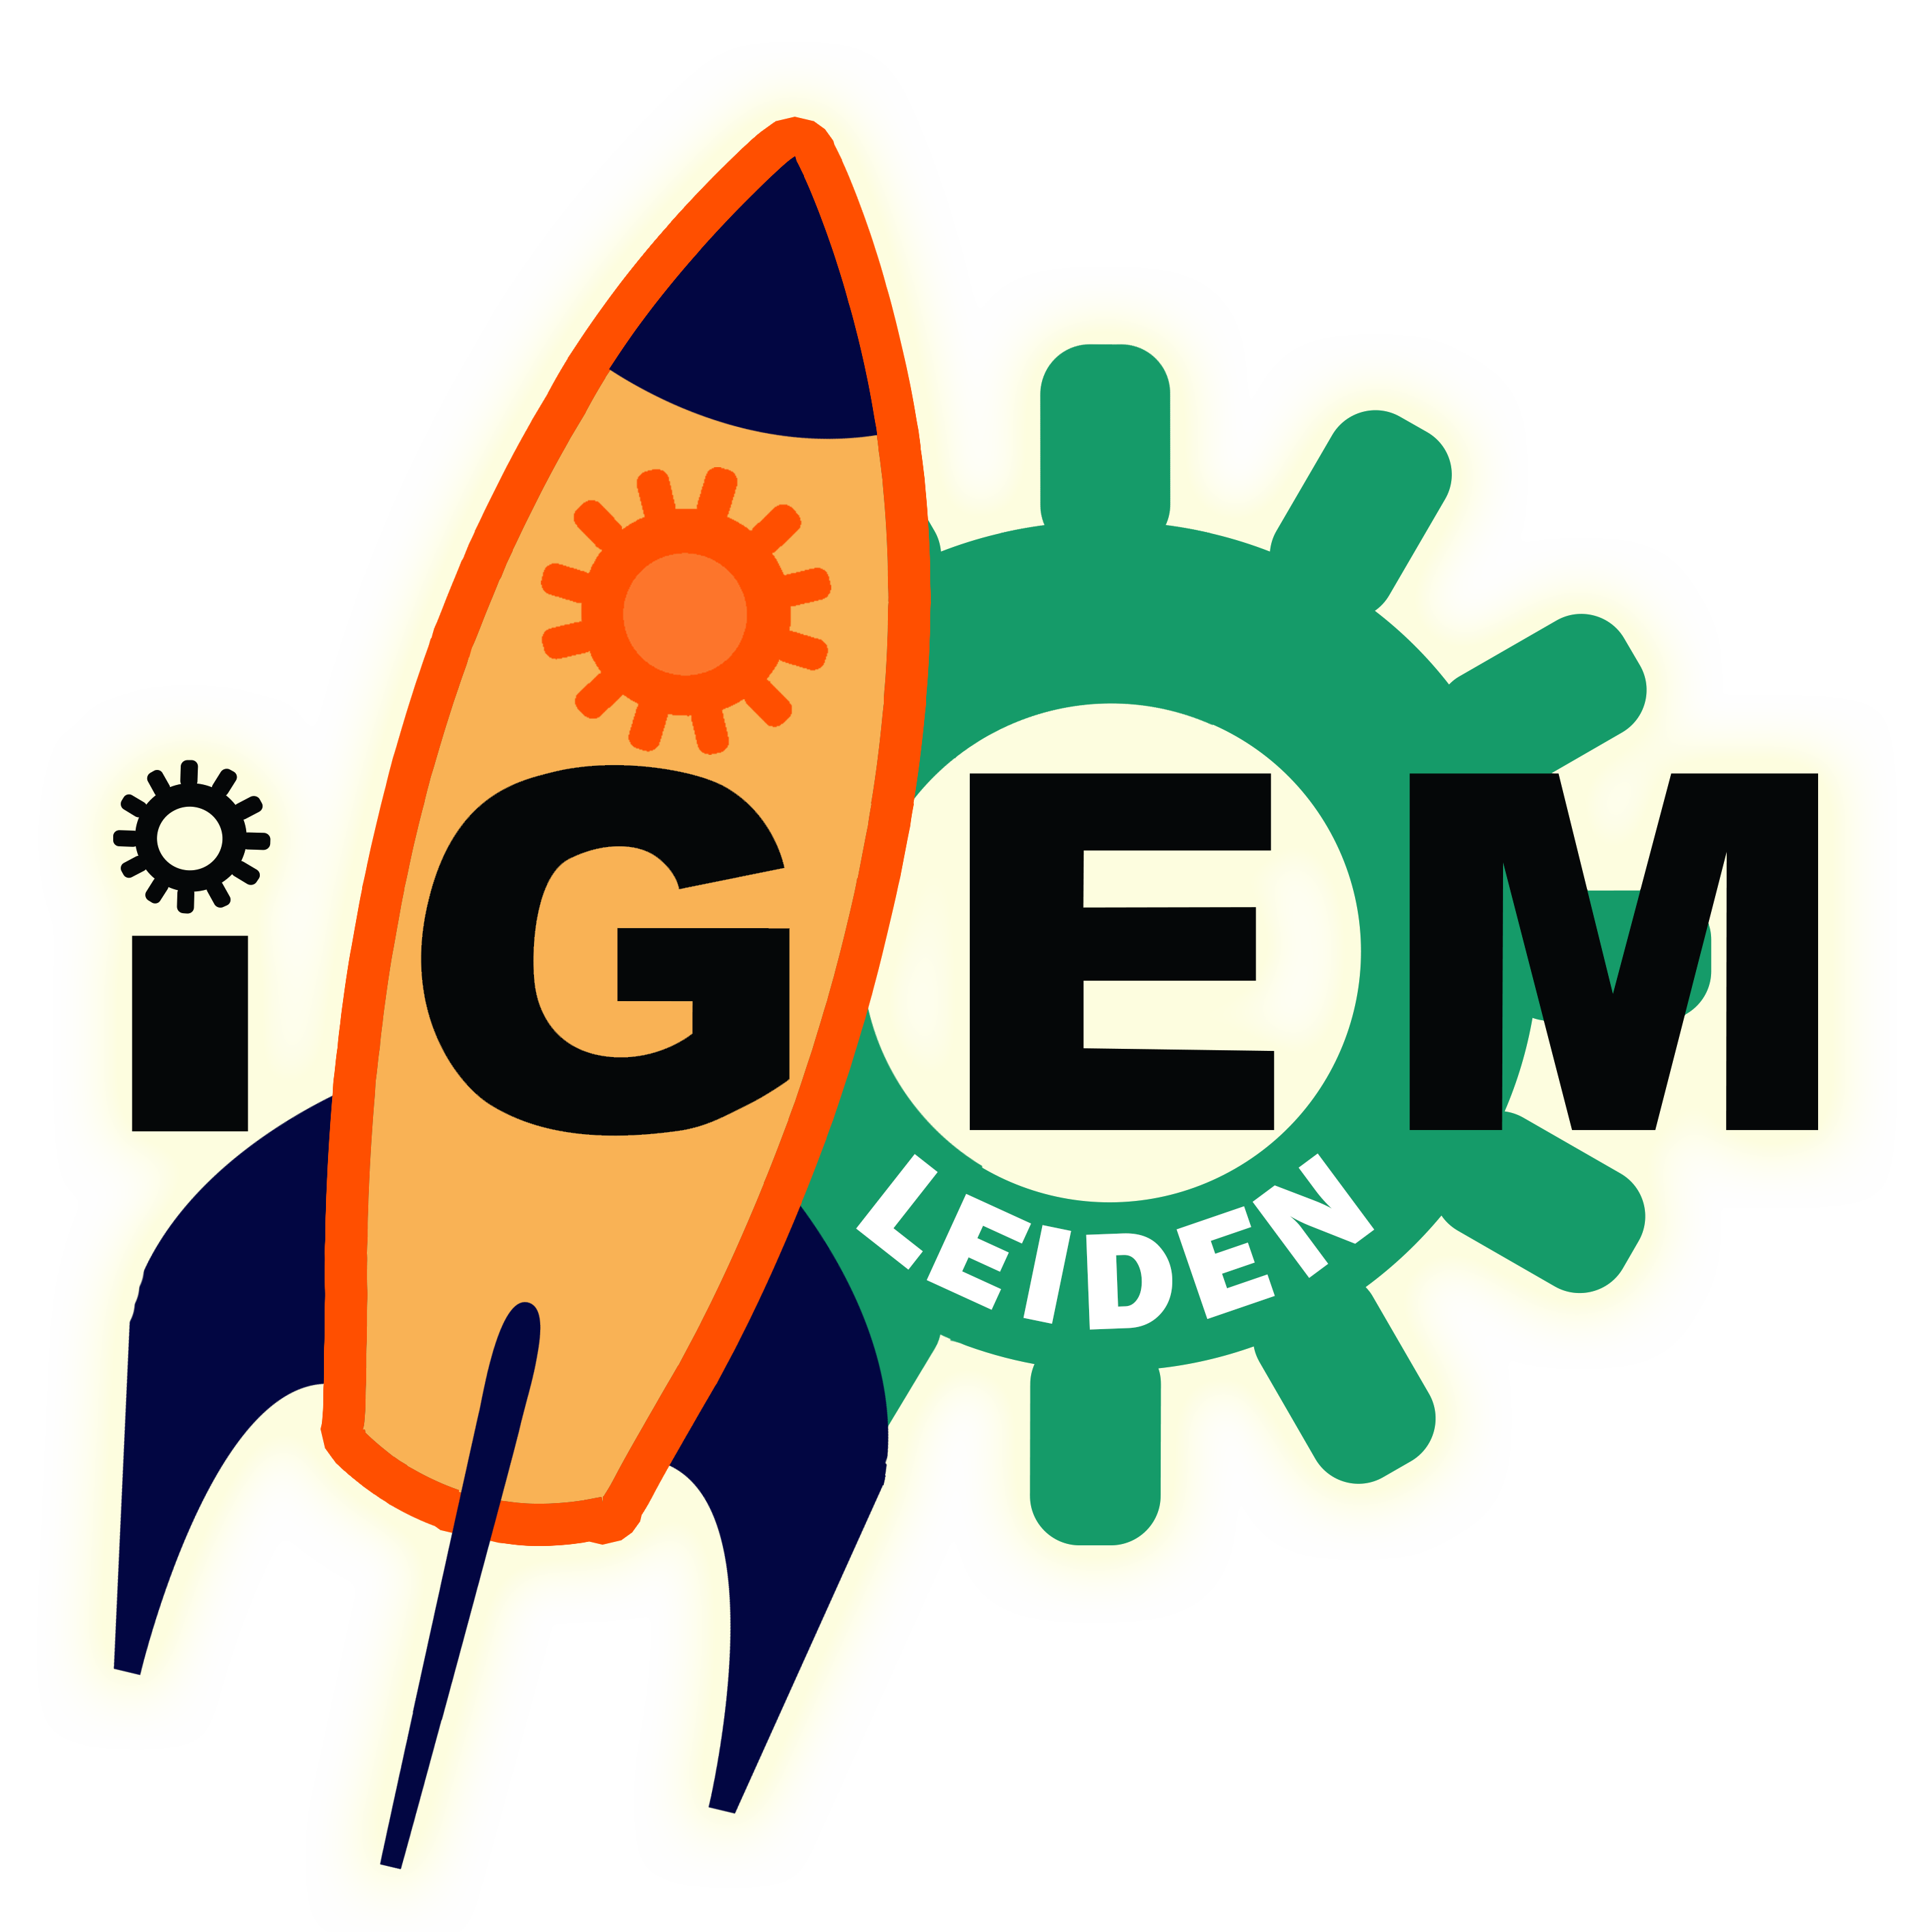 Team-Leiden--images-logo iGEM Leiden Jumbo.png